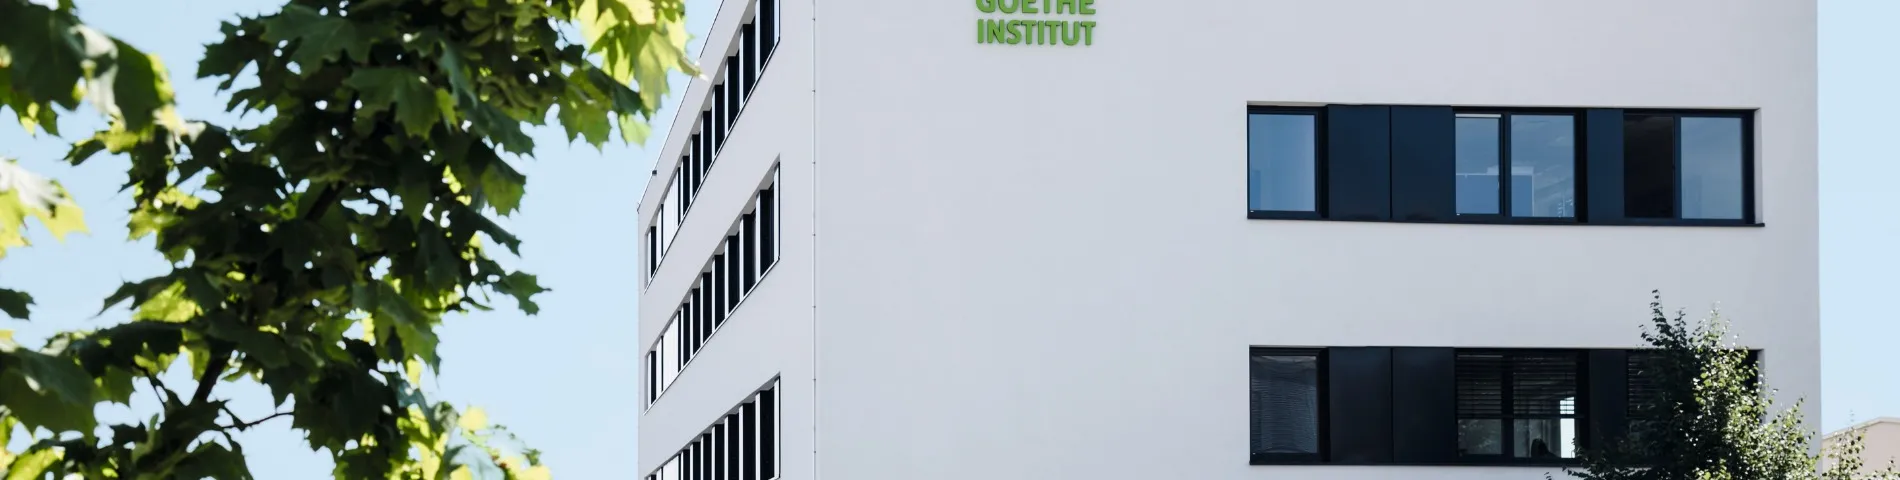 Goethe-Institut foto 1